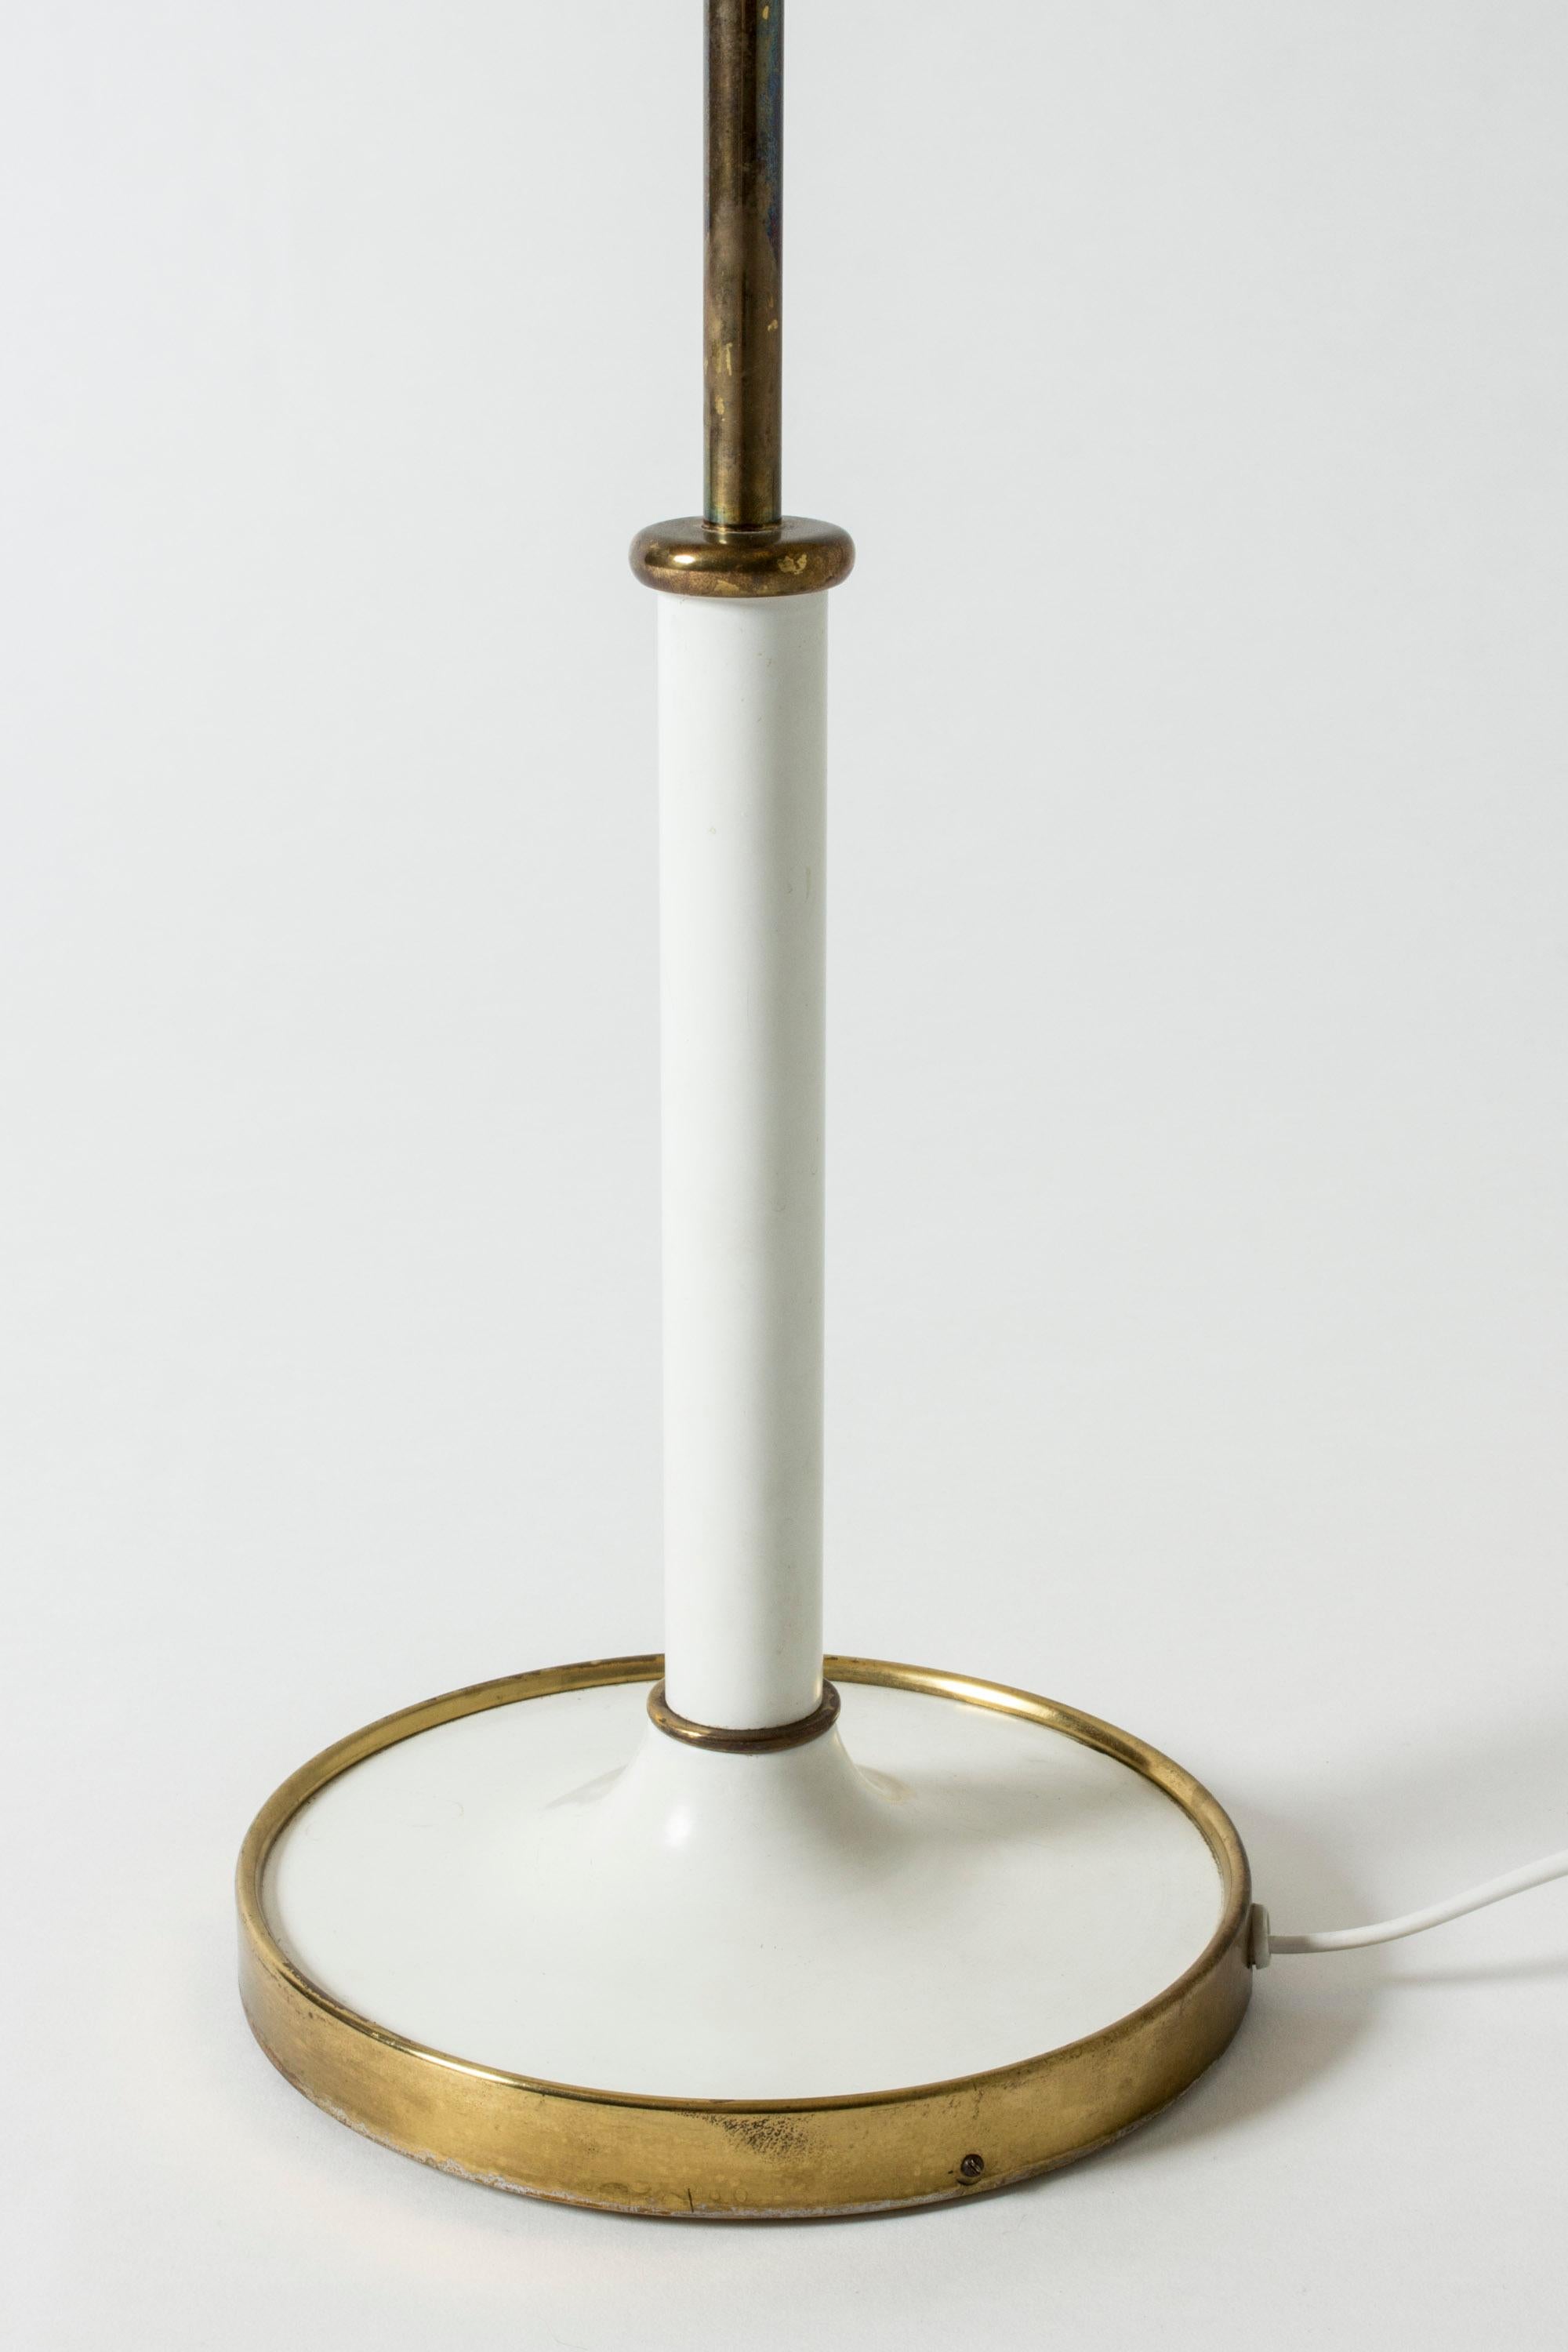 Mid-20th Century Table Lamp #2466 Designed by Josef Frank for Svenskt Tenn, Sweden